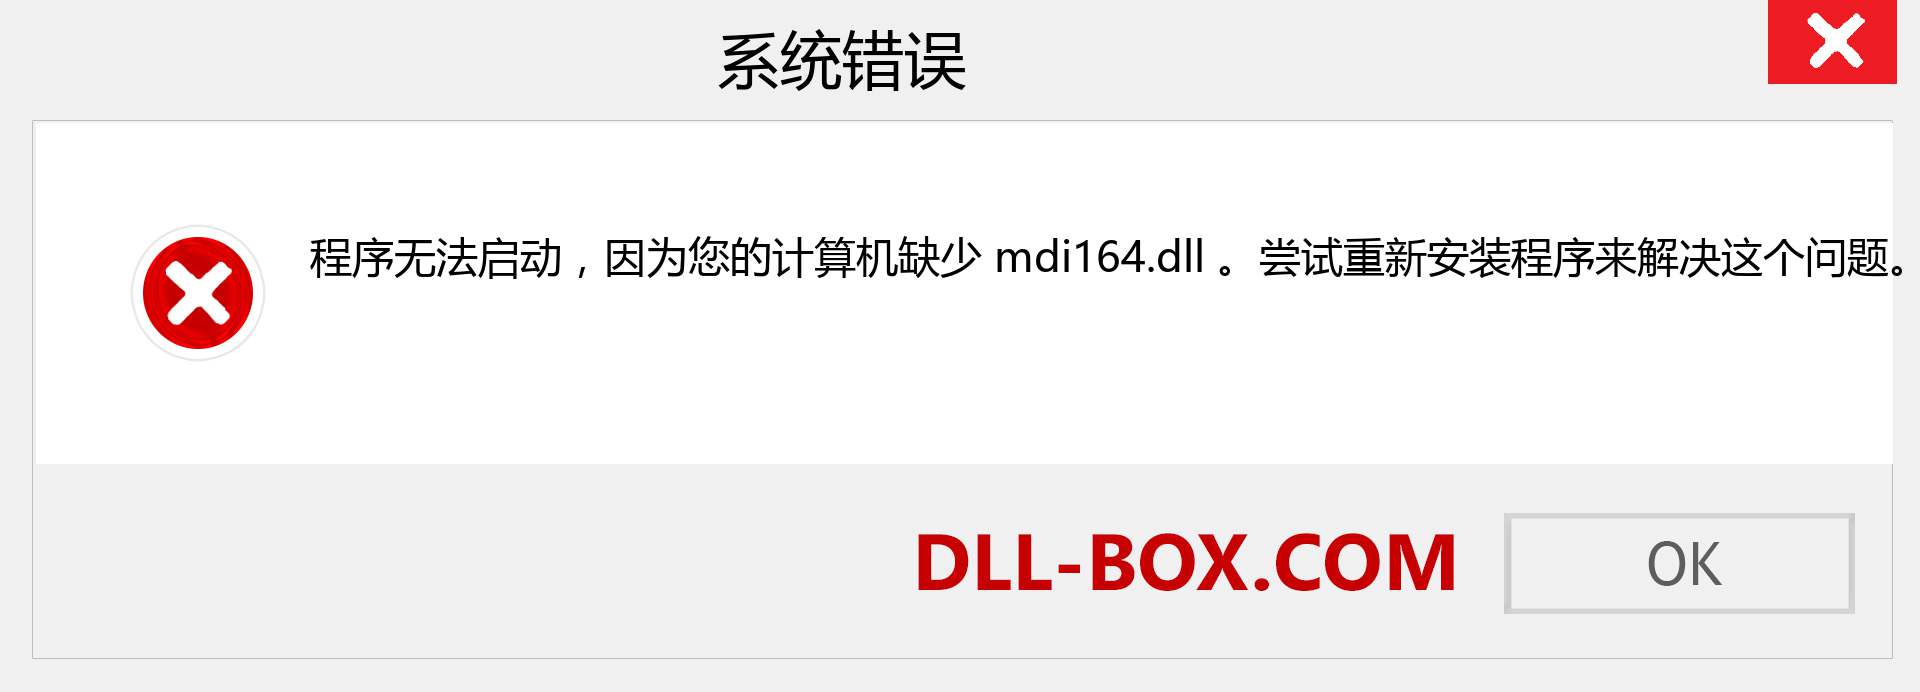 mdi164.dll 文件丢失？。 适用于 Windows 7、8、10 的下载 - 修复 Windows、照片、图像上的 mdi164 dll 丢失错误